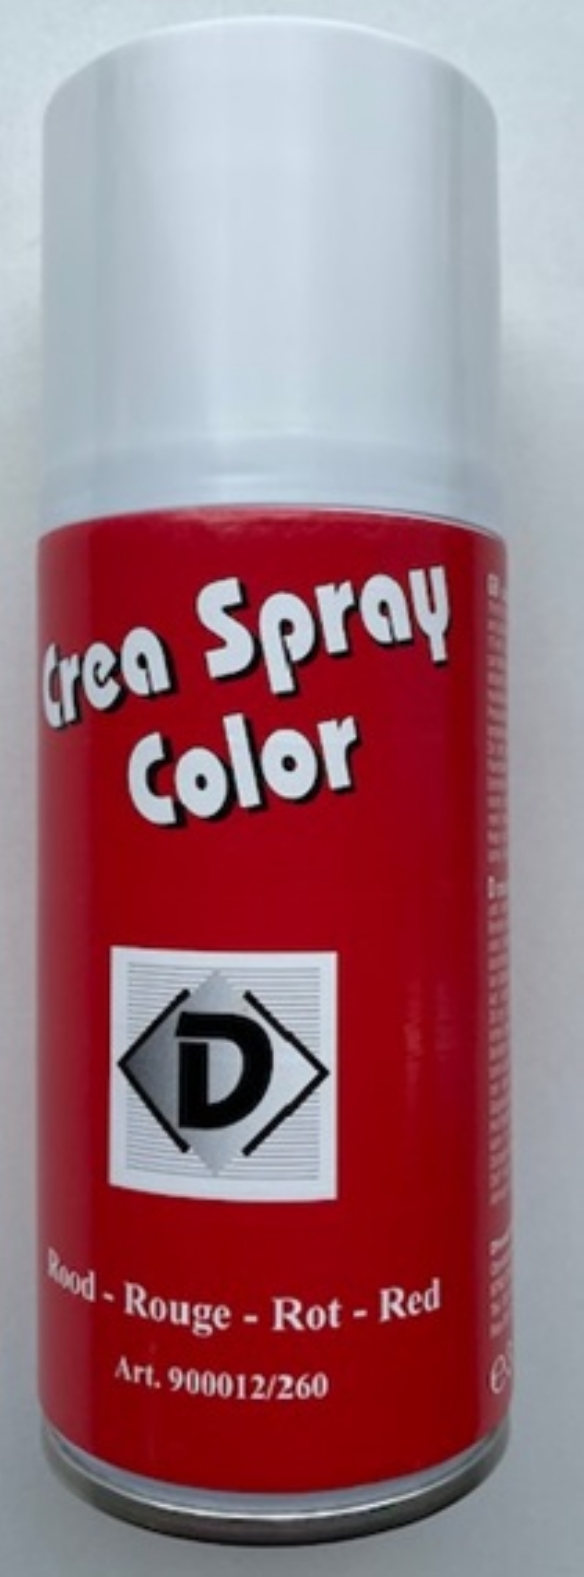 OUTLET Crea spray color, 150 ml, rood kopen?